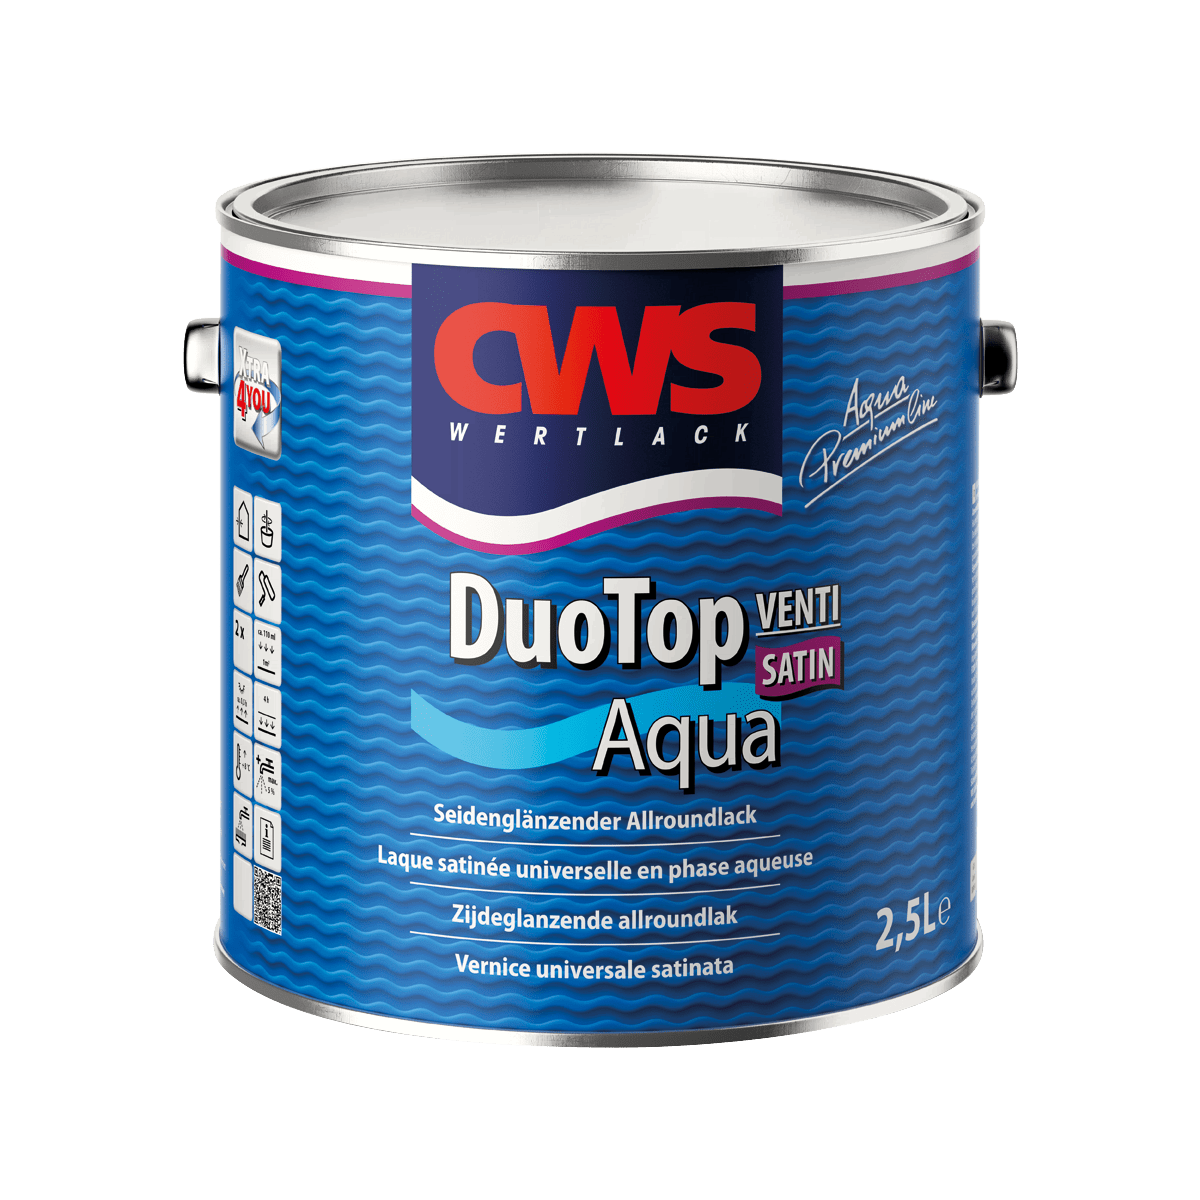 cws-wertlack-duotop-aqua-satin